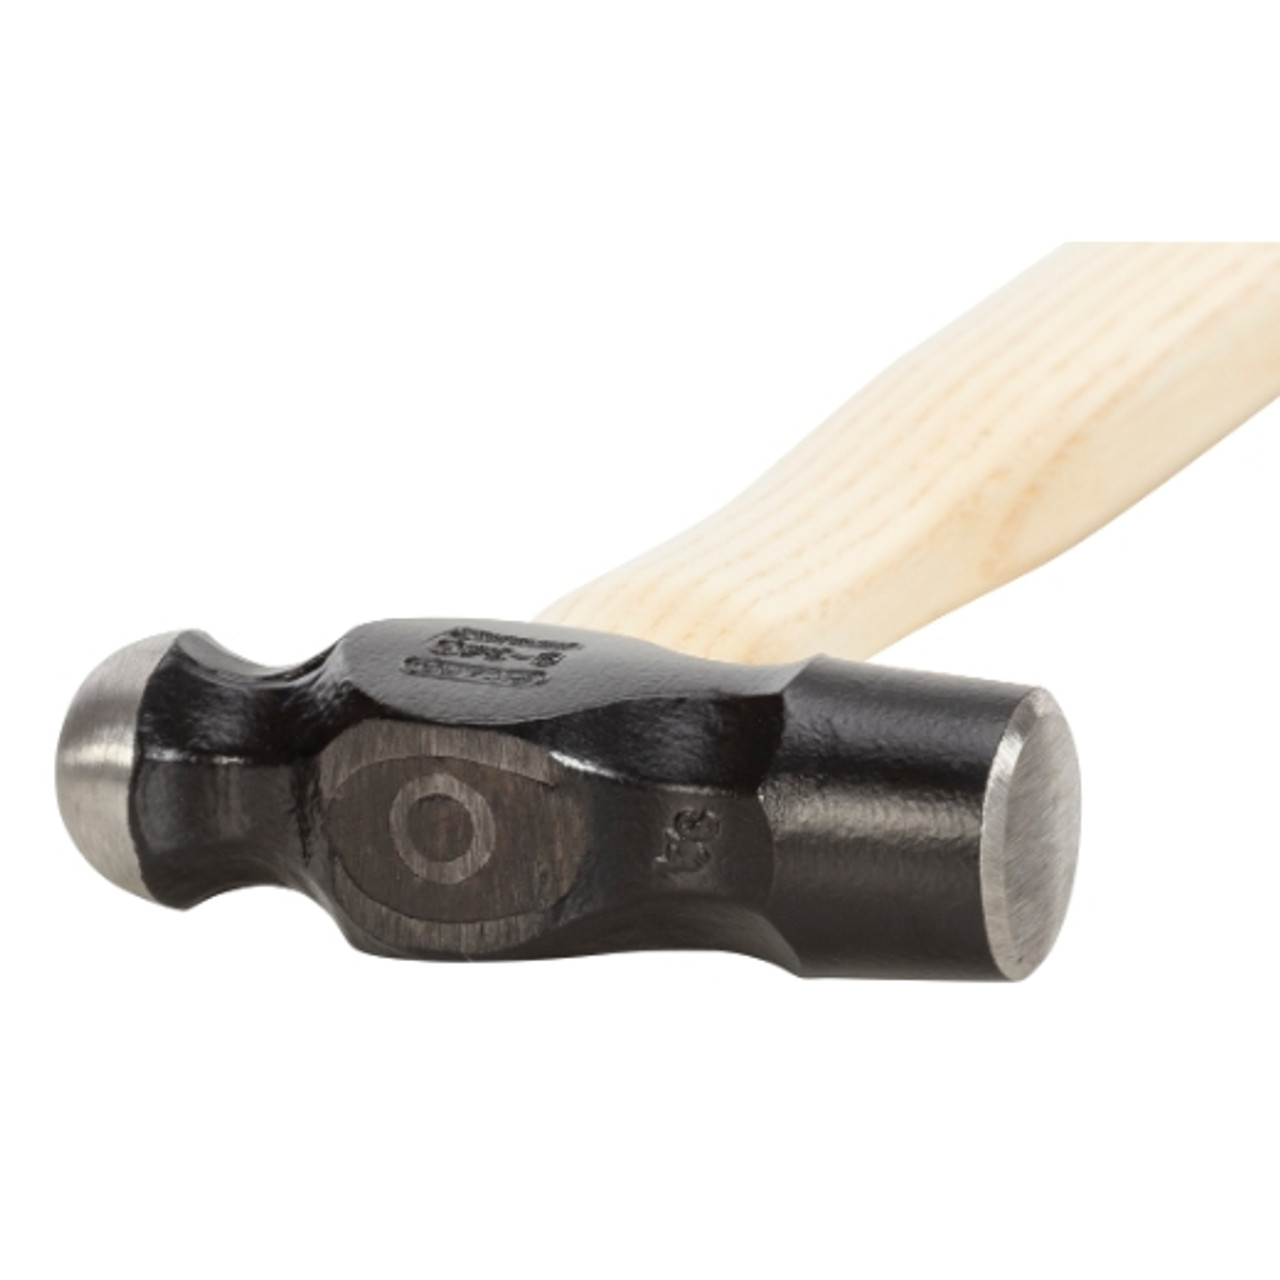 Picard P902-0100 Ball Pein Hammer, 100 gm (3.5 oz), wood handle.